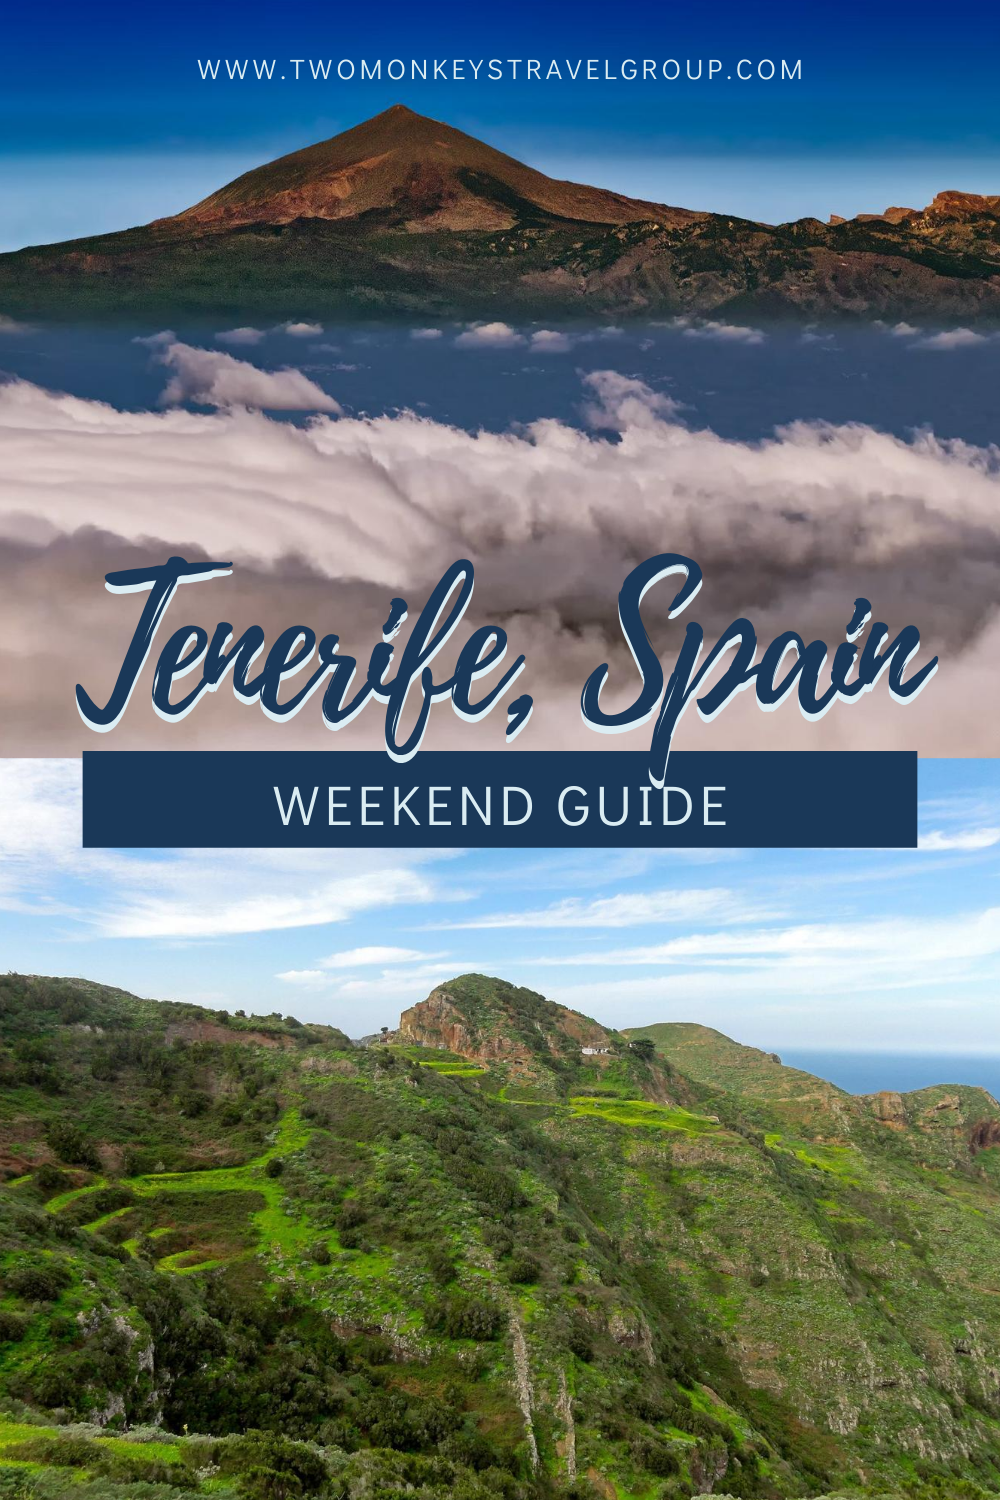 Weekend in Tenerife, Spain How to Spend 3 Days in Tenerife, Spain